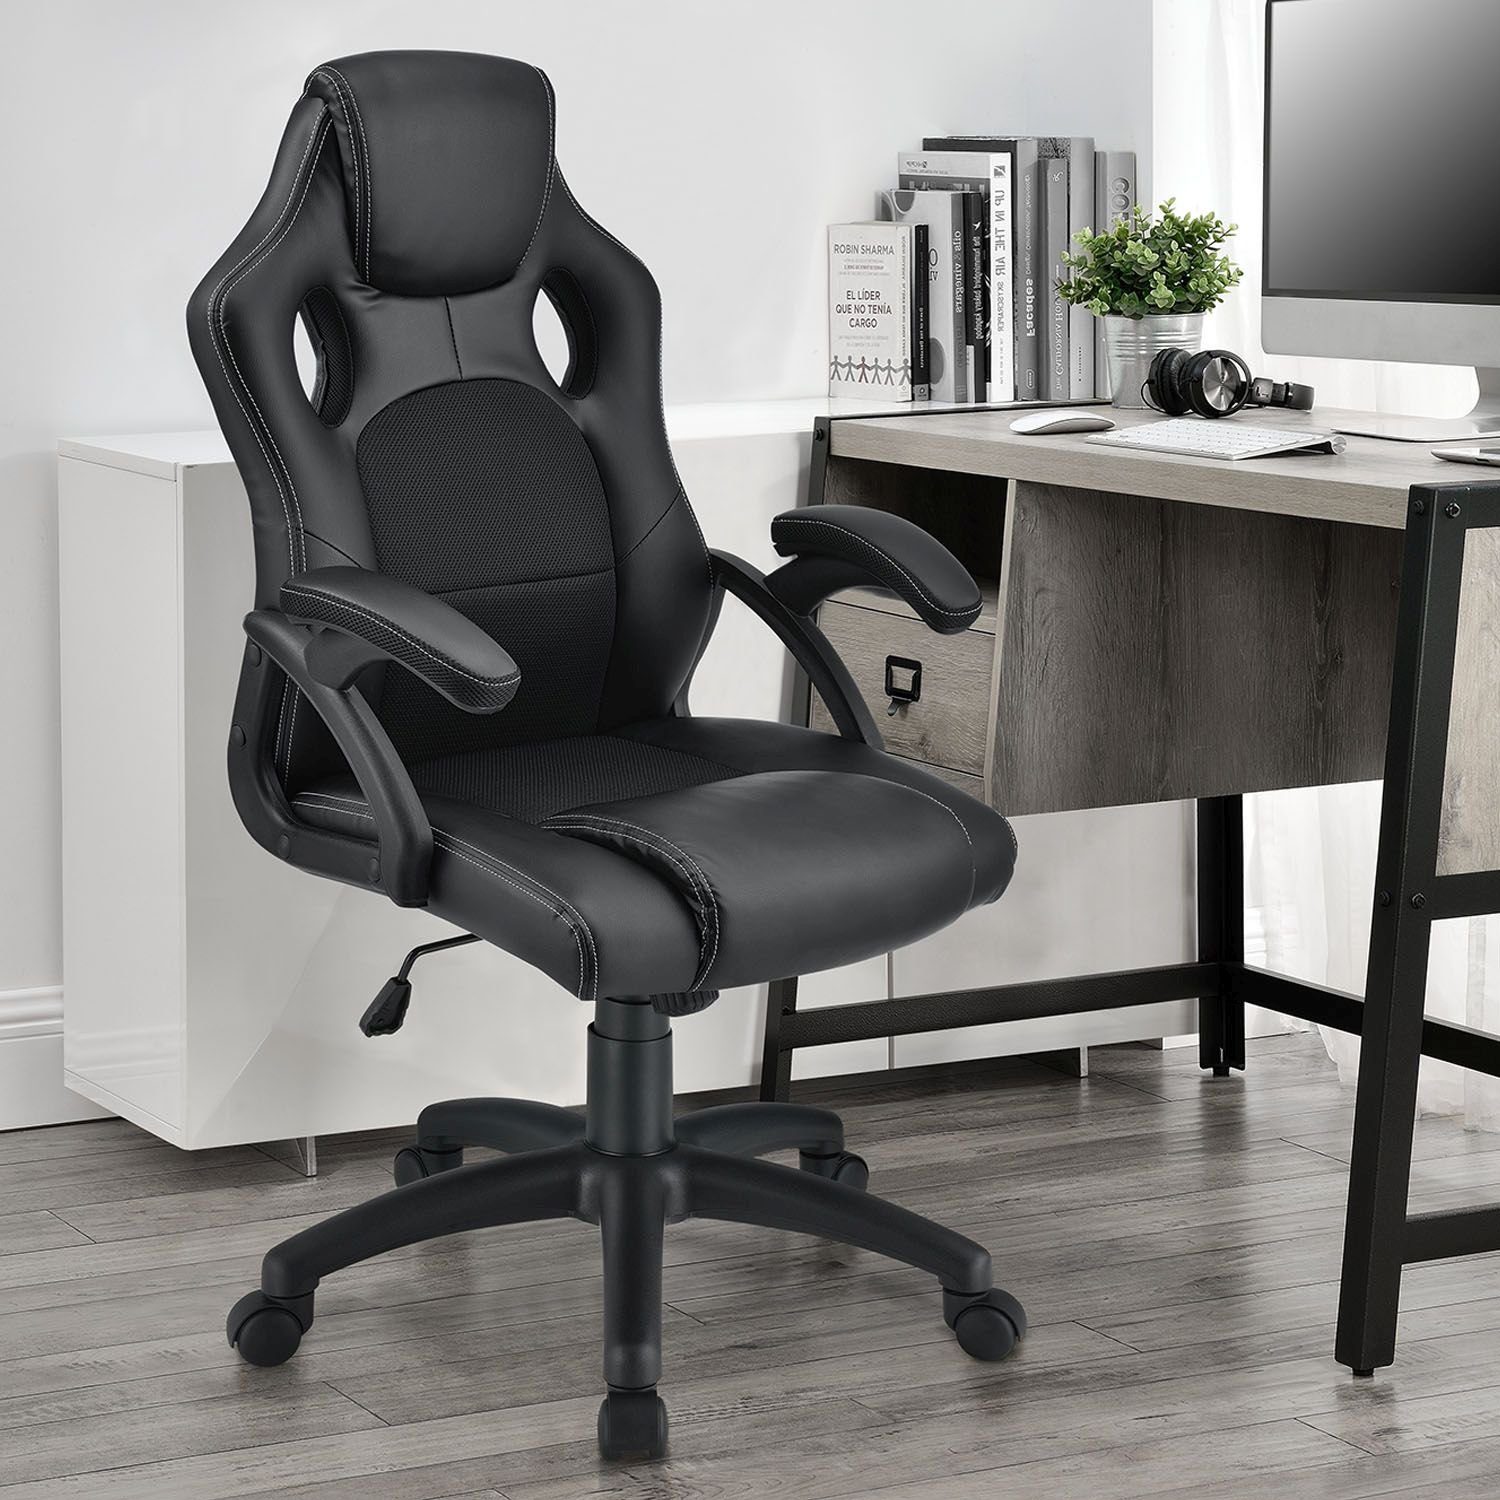 Juskys Gaming-Stuhl Montreal, Ergonomisch geformte Schwarz Sitzfläche, kippbar Rückenlehne und Sitzfläche